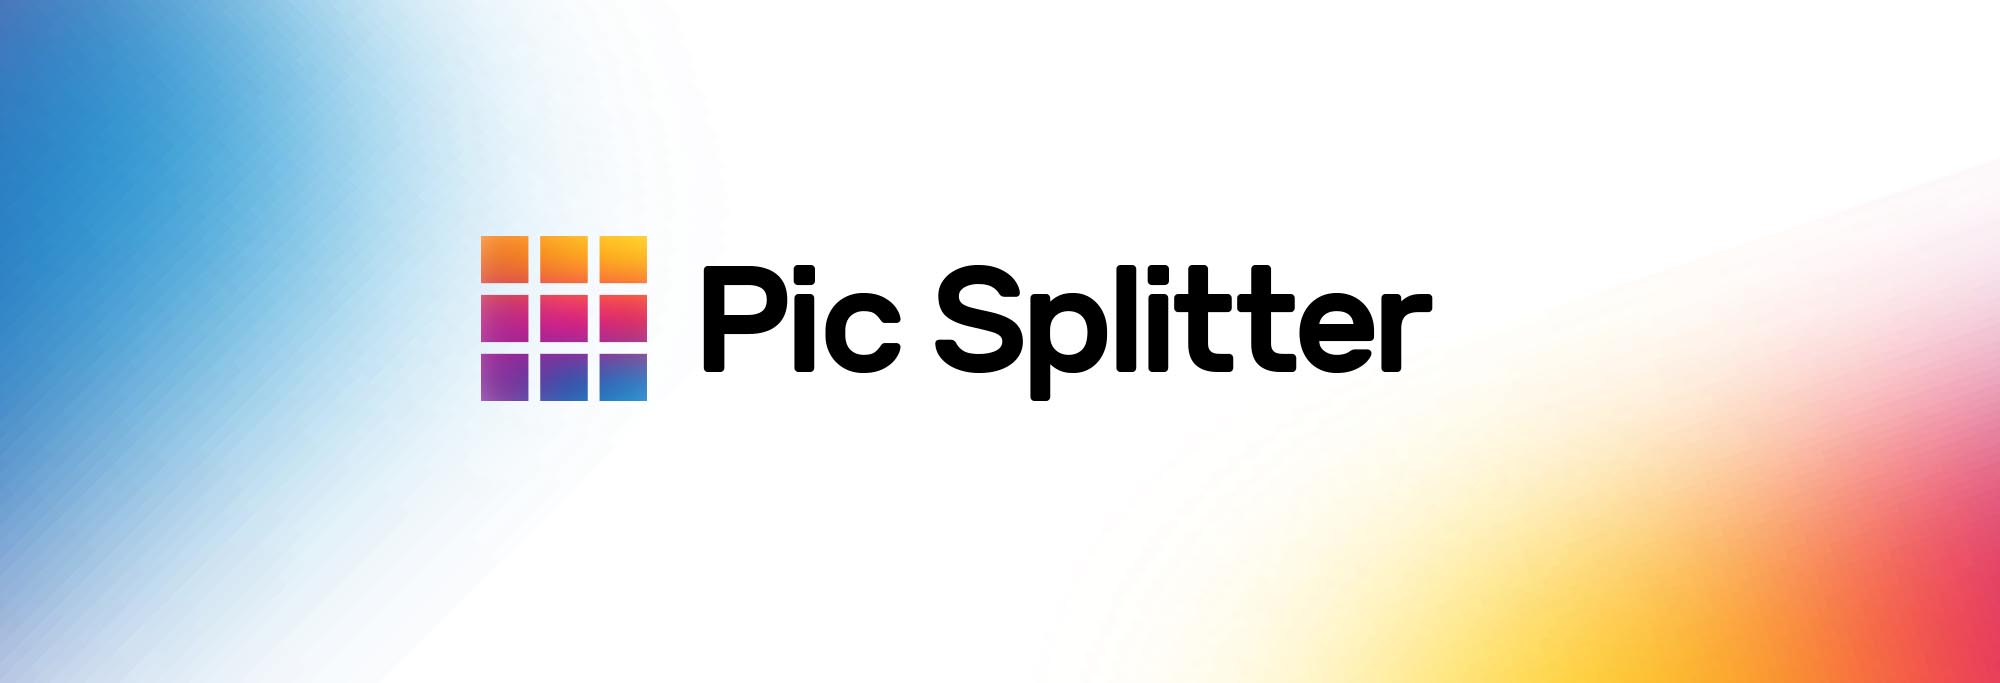 Pic Splitter Banner